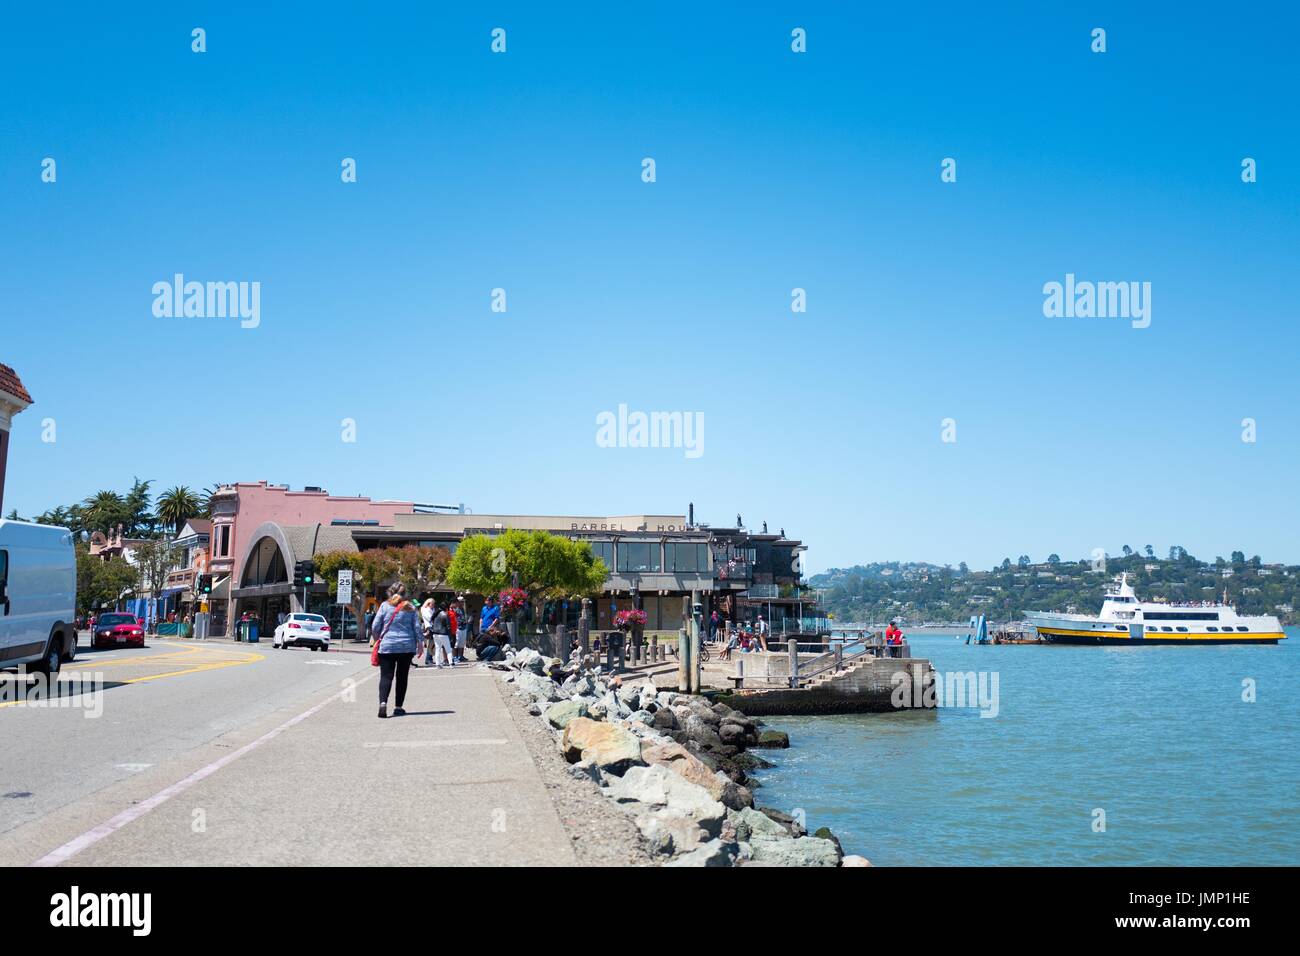 Un ferry de San Francisco es visible, junto con el centro de negocios, en Bridgeway Road, en el área de la Bahía de San Francisco, la ciudad de Sausalito, California, 29 de junio de 2017. Foto de stock